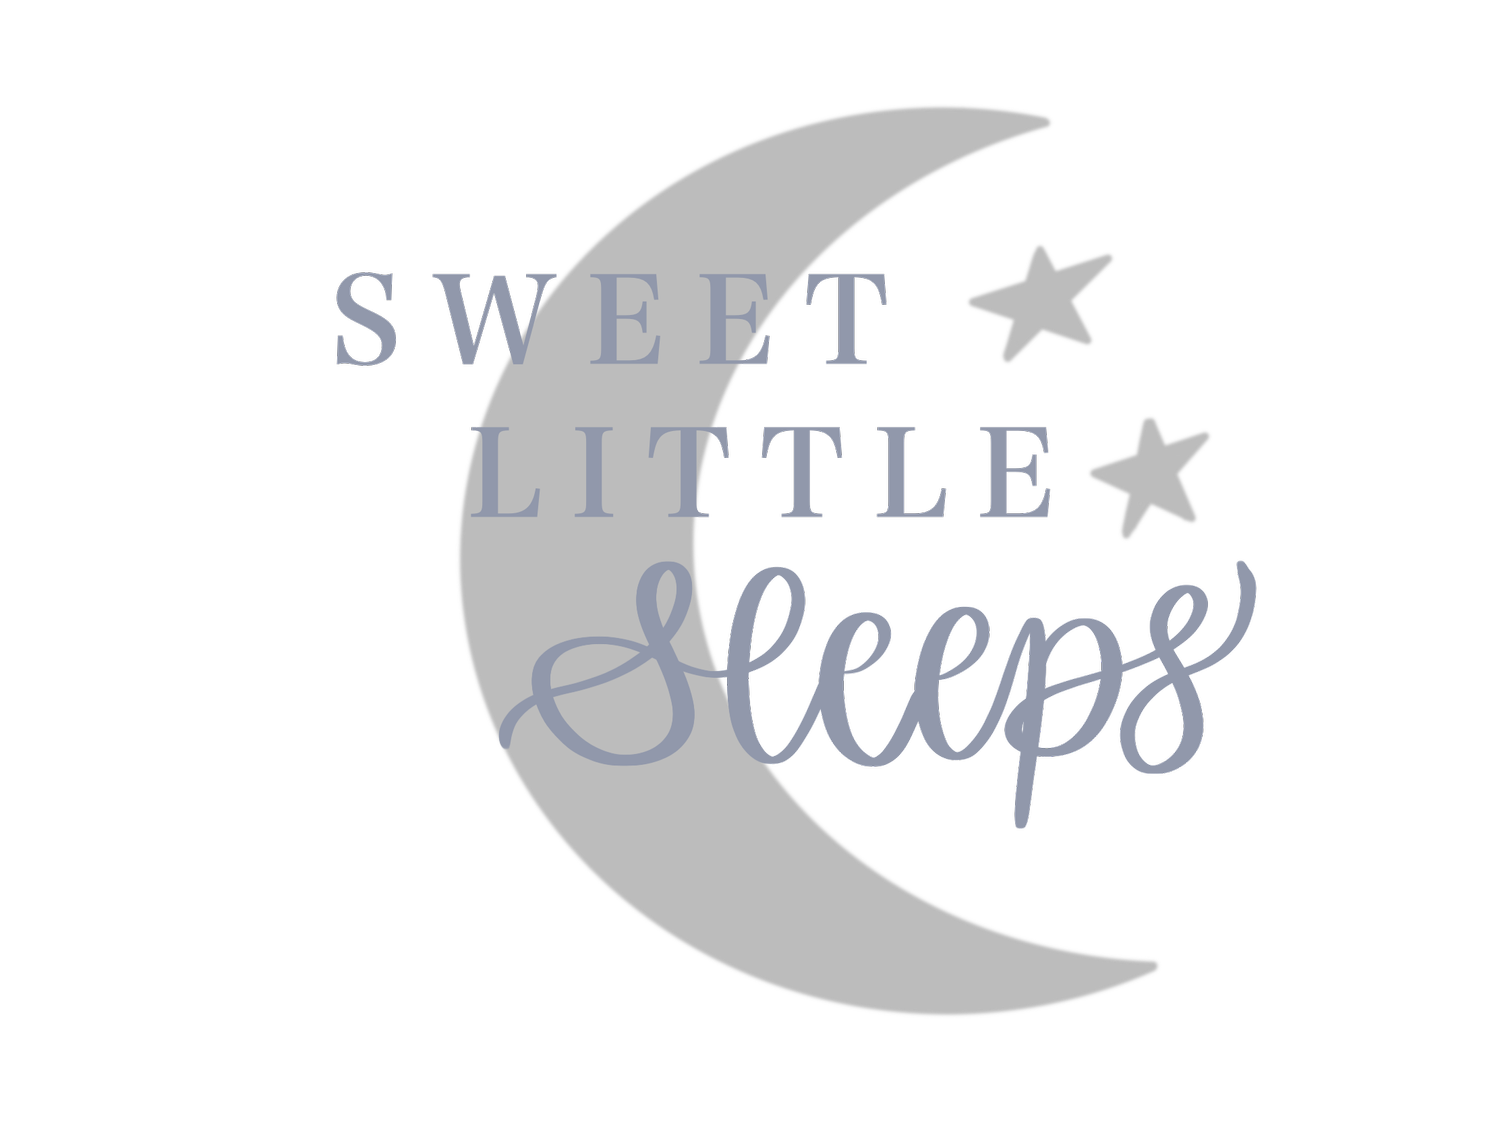 Sweet Little Sleeps